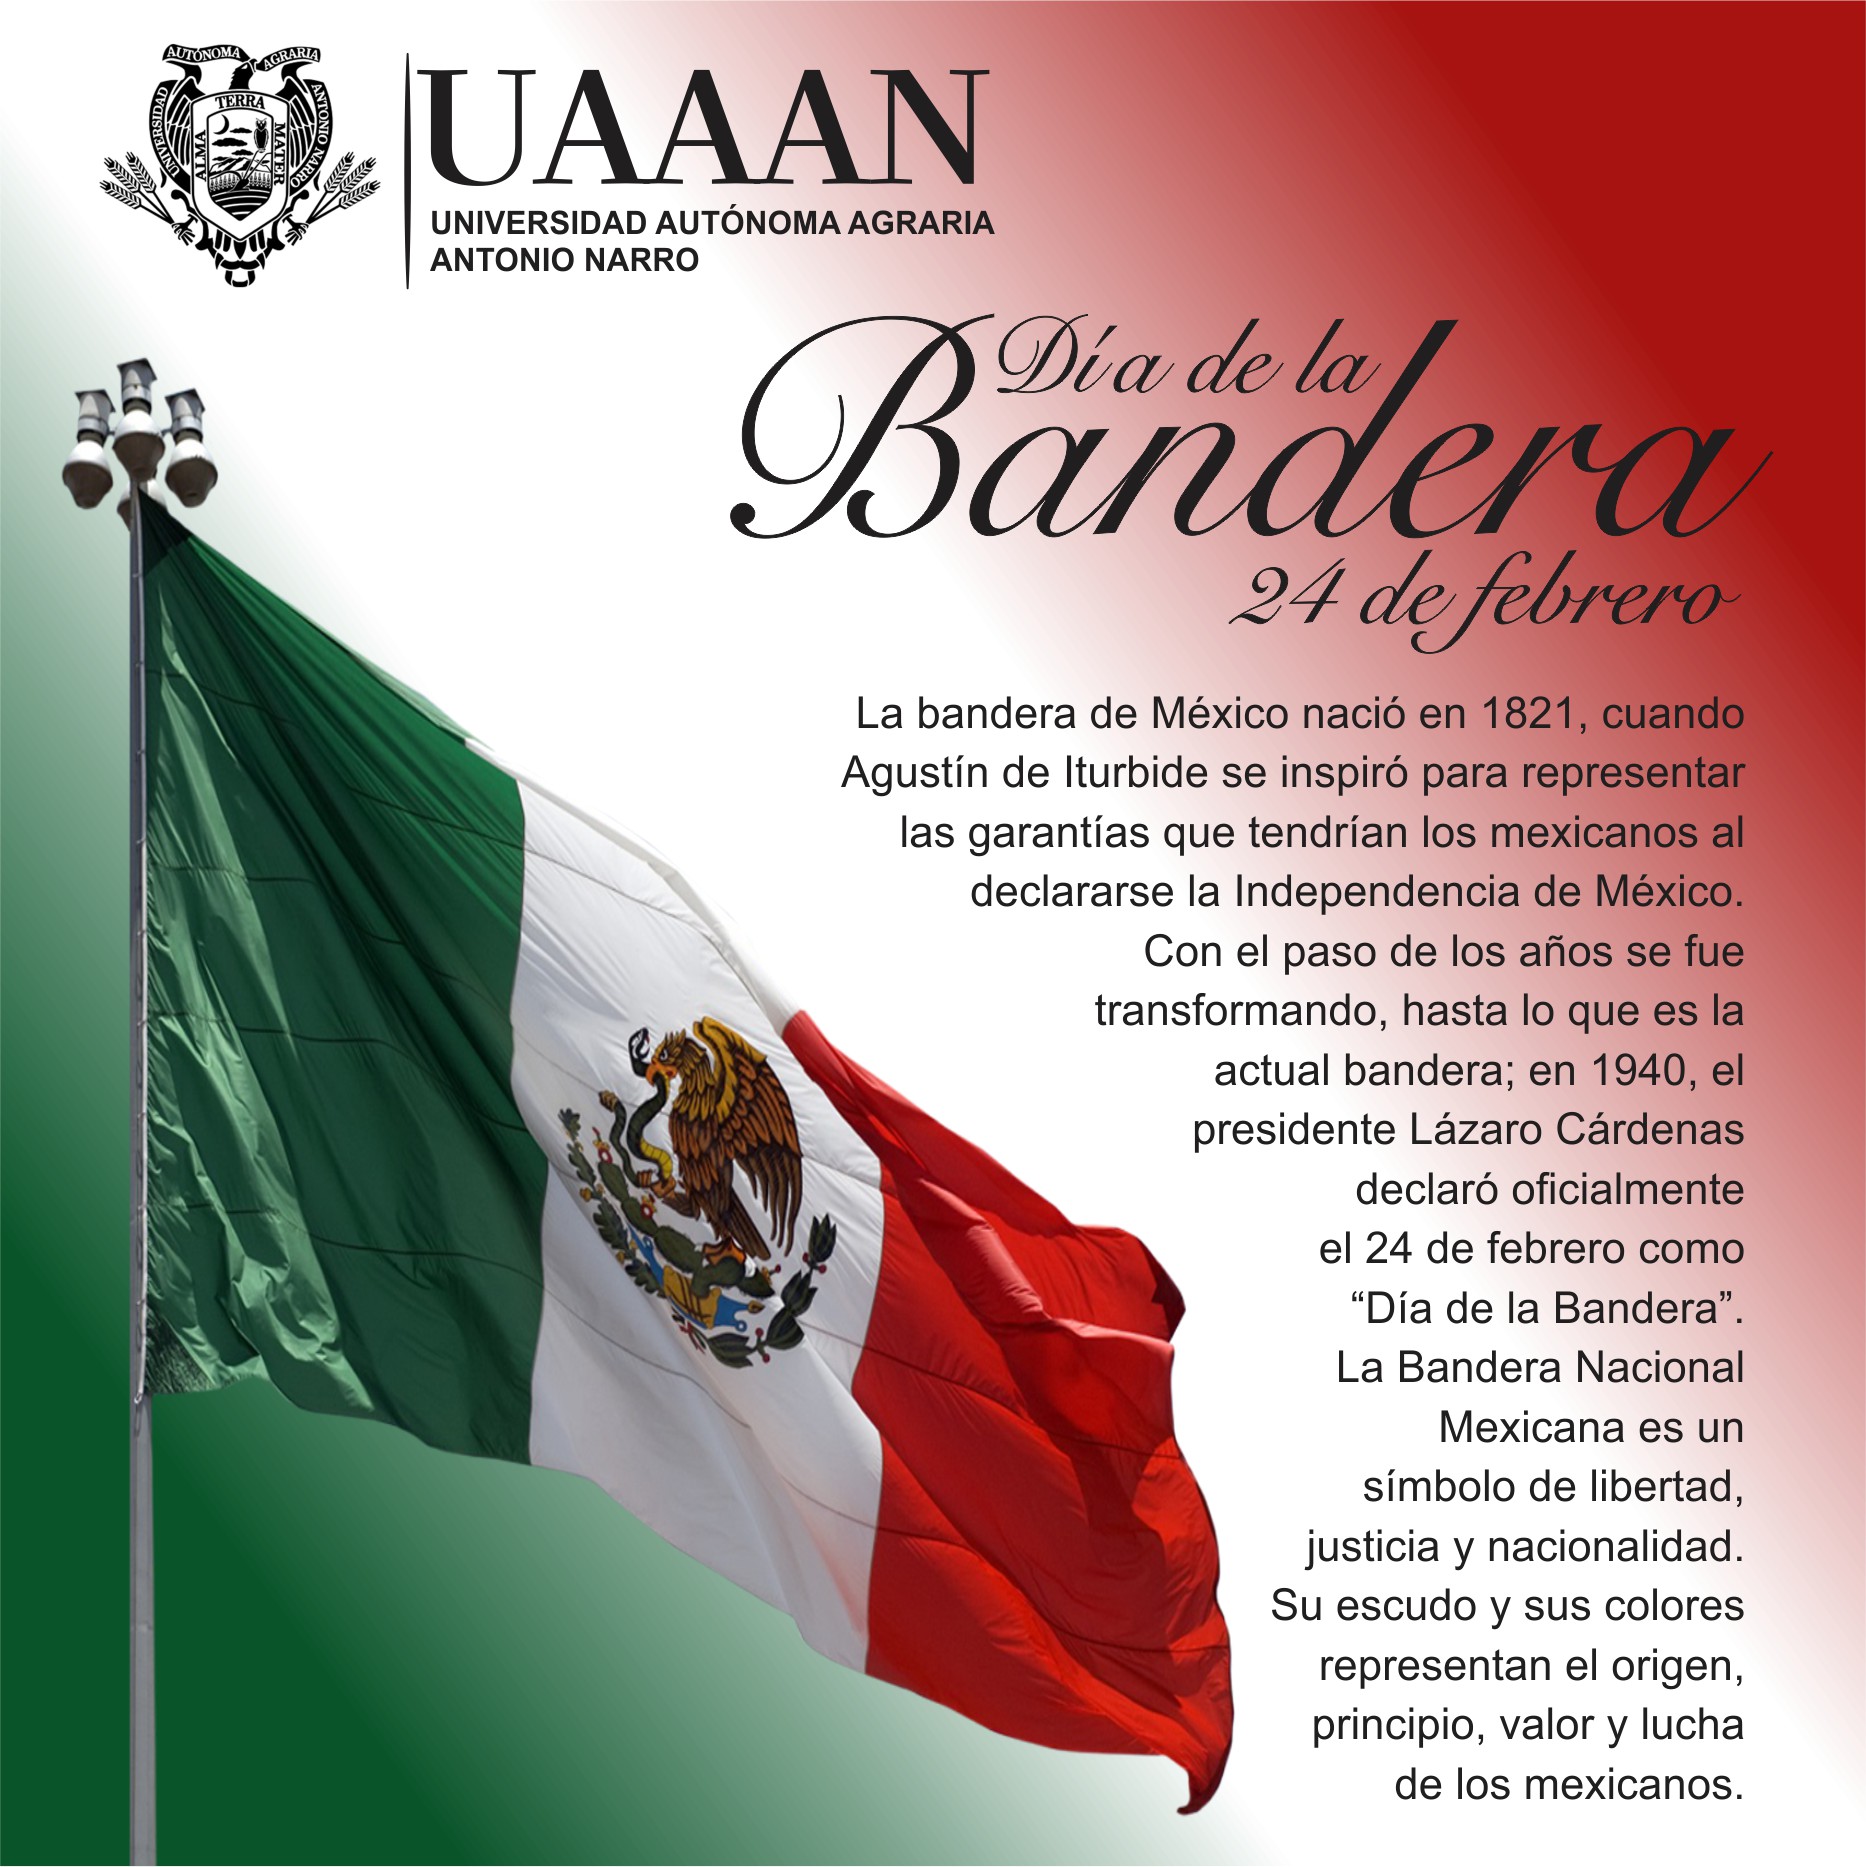 Sintético 97 Foto Imagenes De La Bandera De Mexico 24 De Febrero Lleno